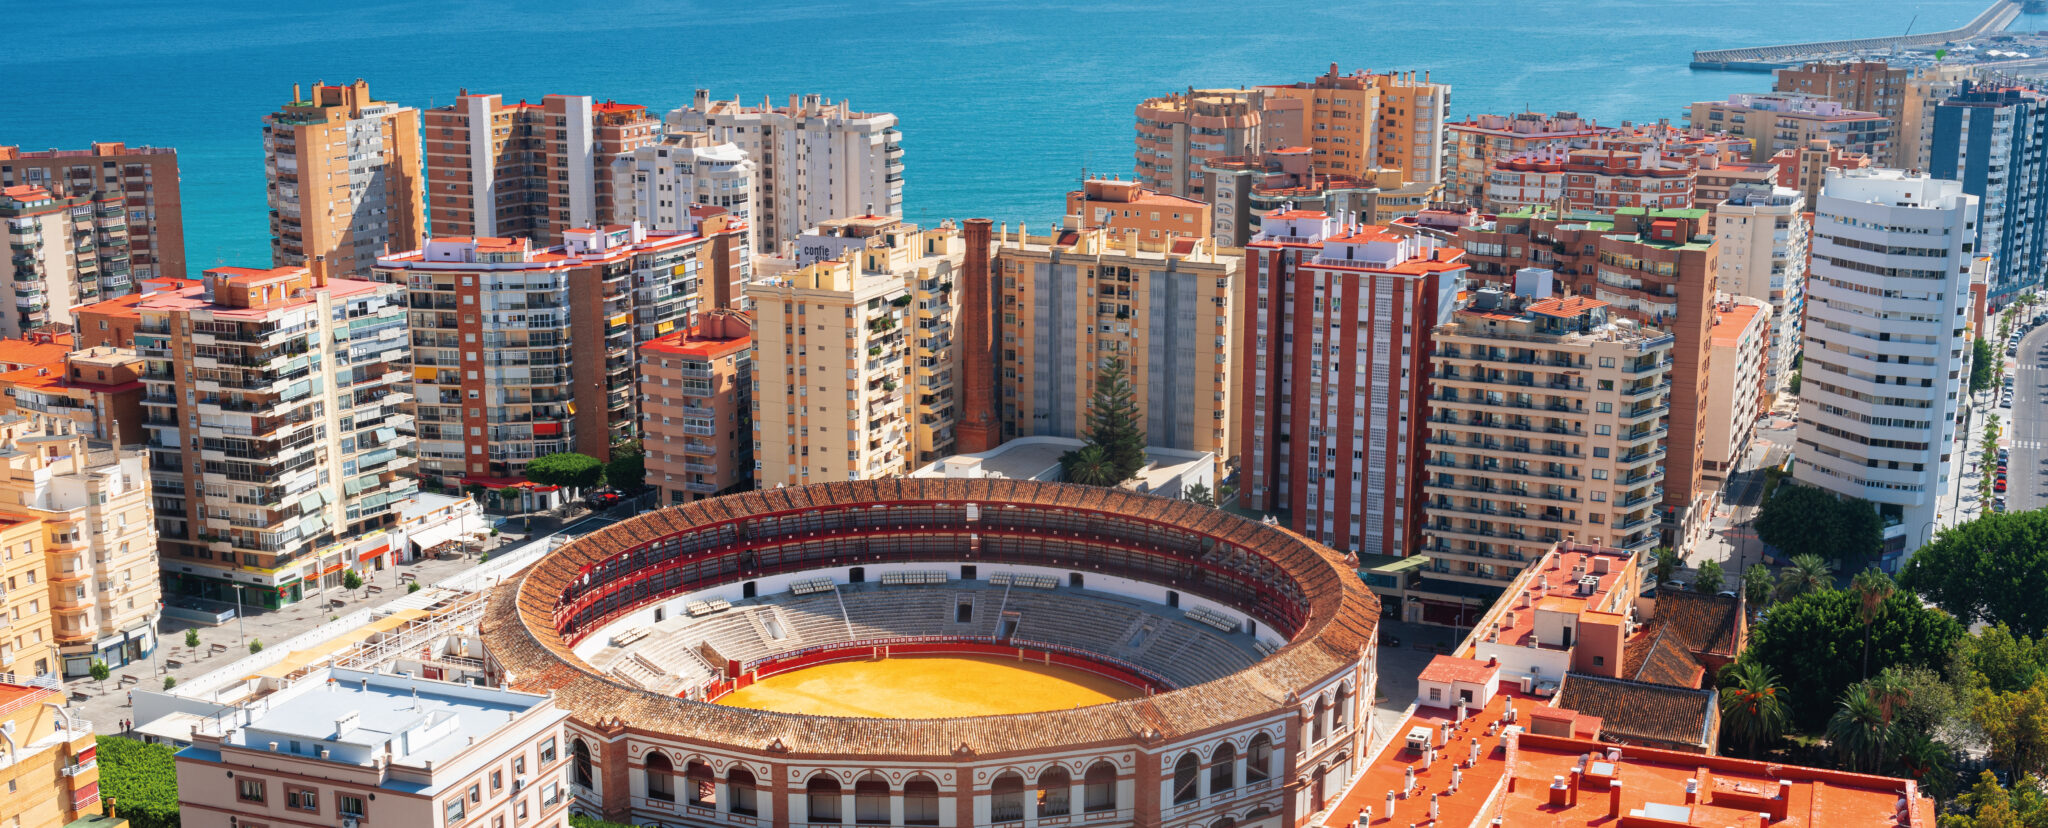 Málaga es uno de los destinos de verano más atractivos del Mediterráneo. Sigue leyendo y descubre qué hacer en tu viaje a Málaga